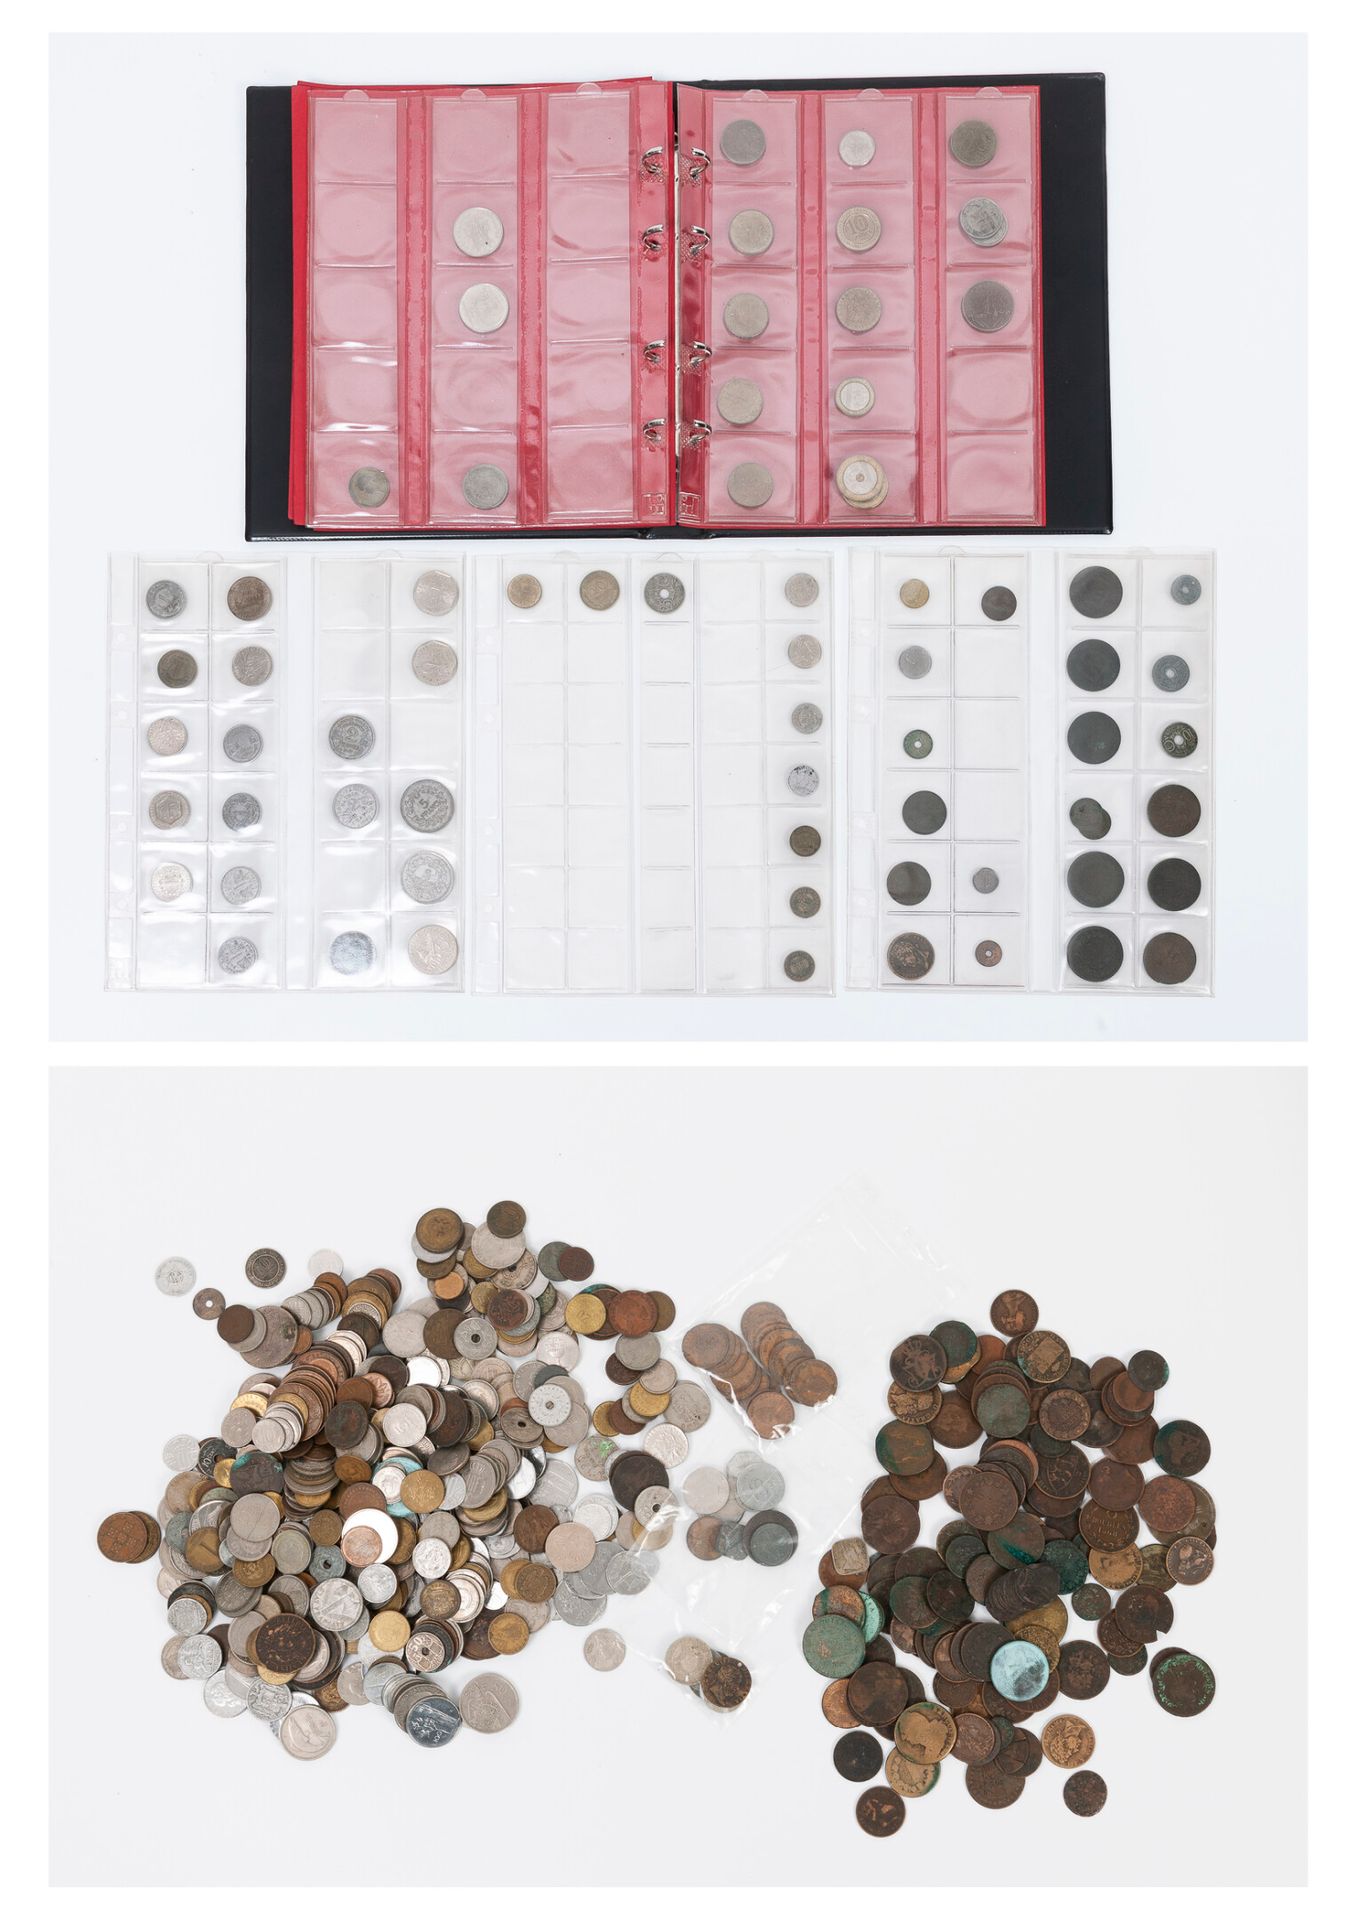 TOUS PAYS, XIXème-XXème siècles Monedas y algunas fichas de metal o cobre.

Un p&hellip;